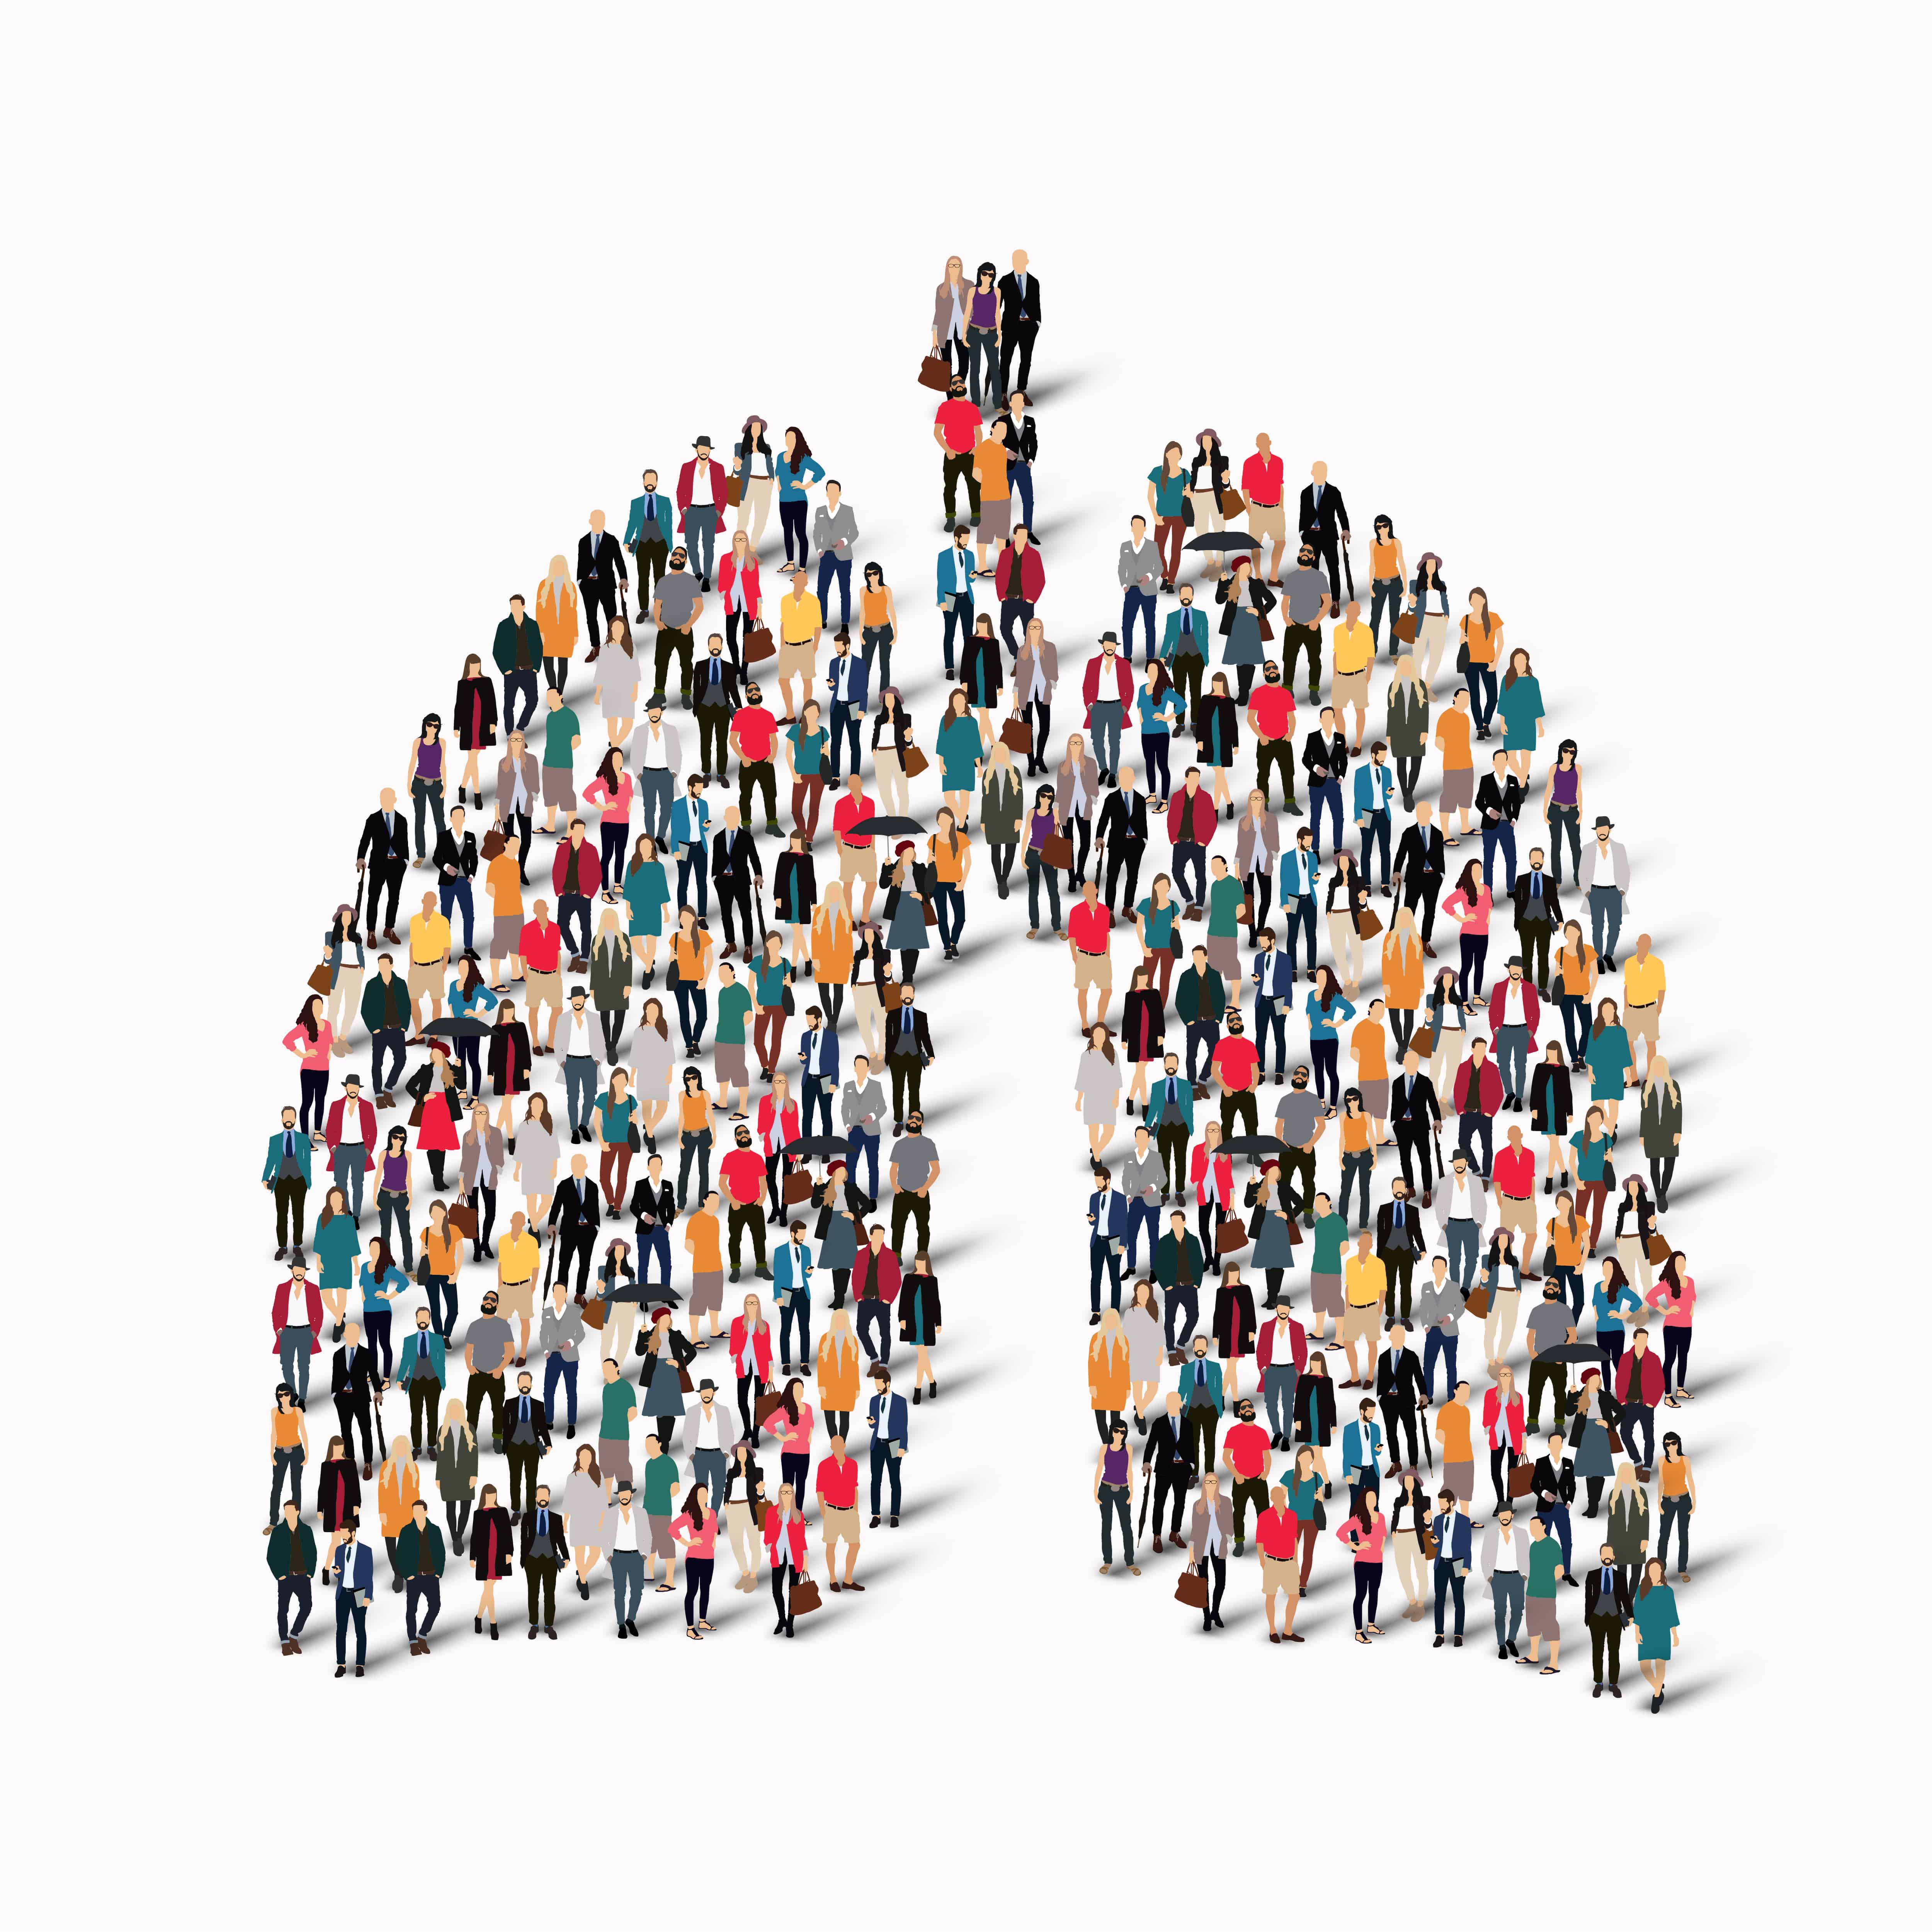 Pulmologija se bavi bolestima dišnog sustava